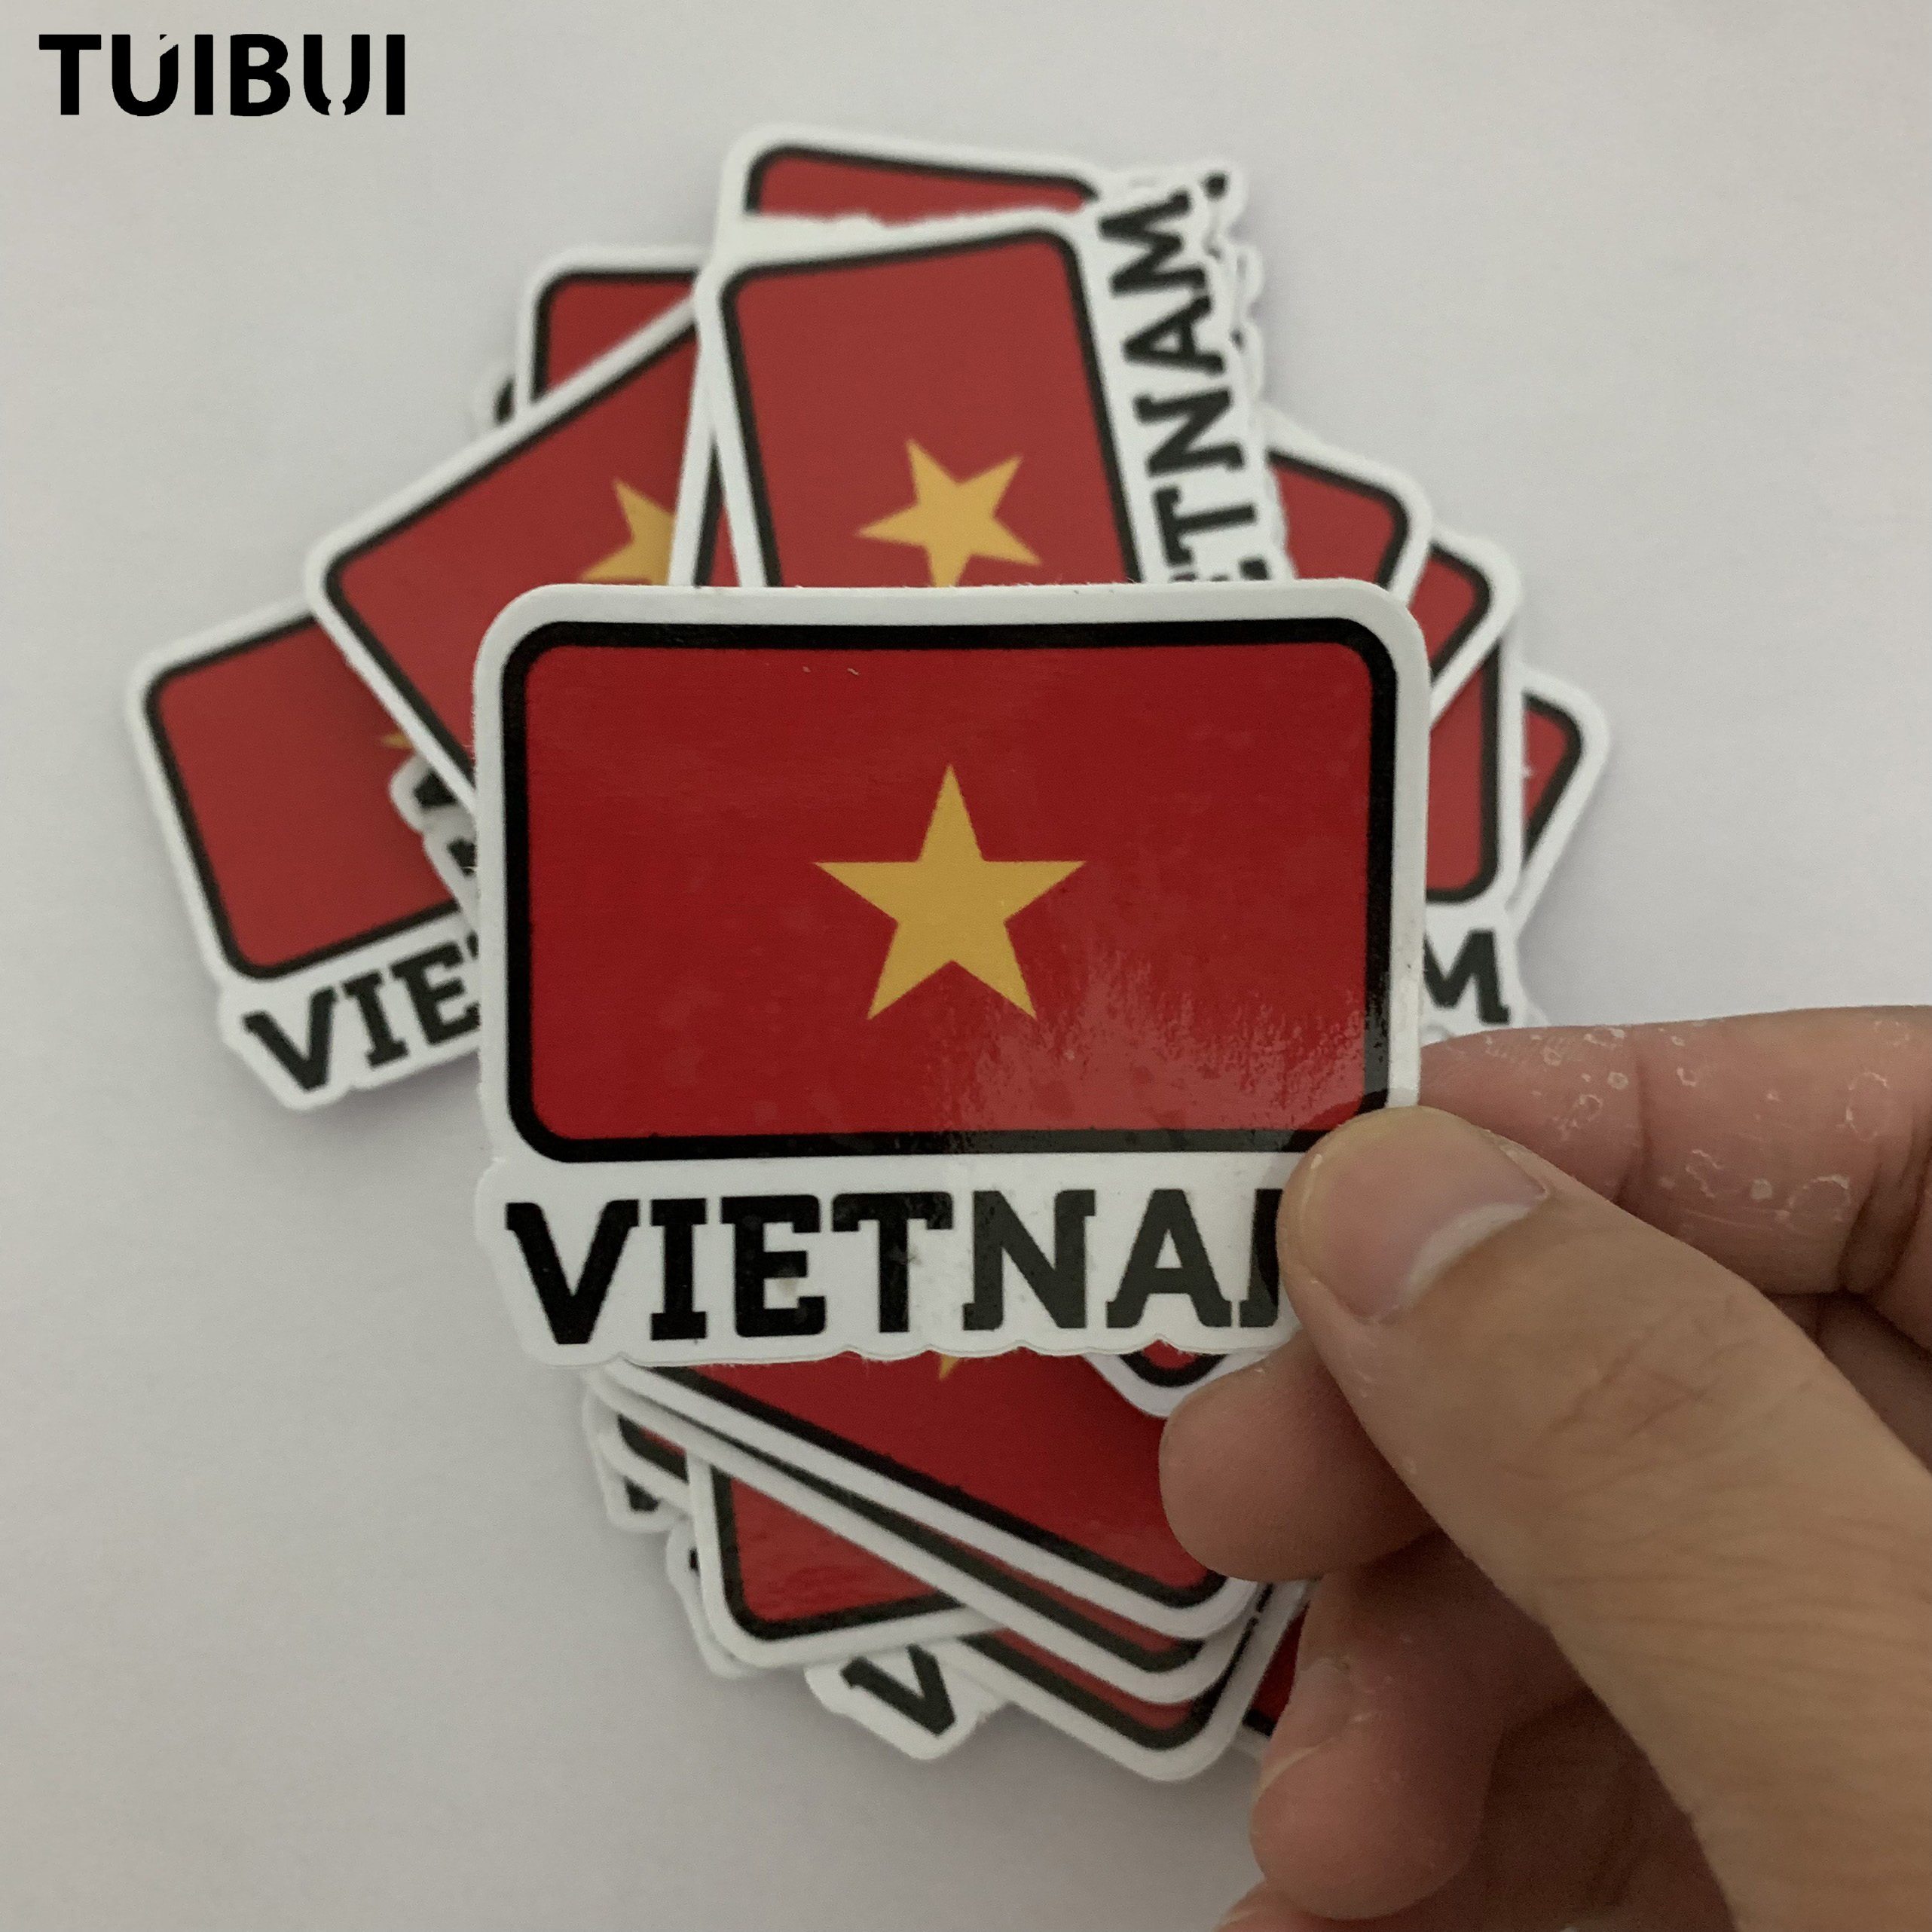 Hình dán lá cờ Việt Nam: Bắt đầu ngay hôm nay với những hình dán lá cờ Việt Nam sáng tạo và độc đáo, giúp bạn trang trí và tôn lên vẻ đẹp cho các đồ vật xung quanh. Tự hào với nước nhà của mình đi cùng chất lượng sản phẩm đảm bảo và giá cả hợp lý.